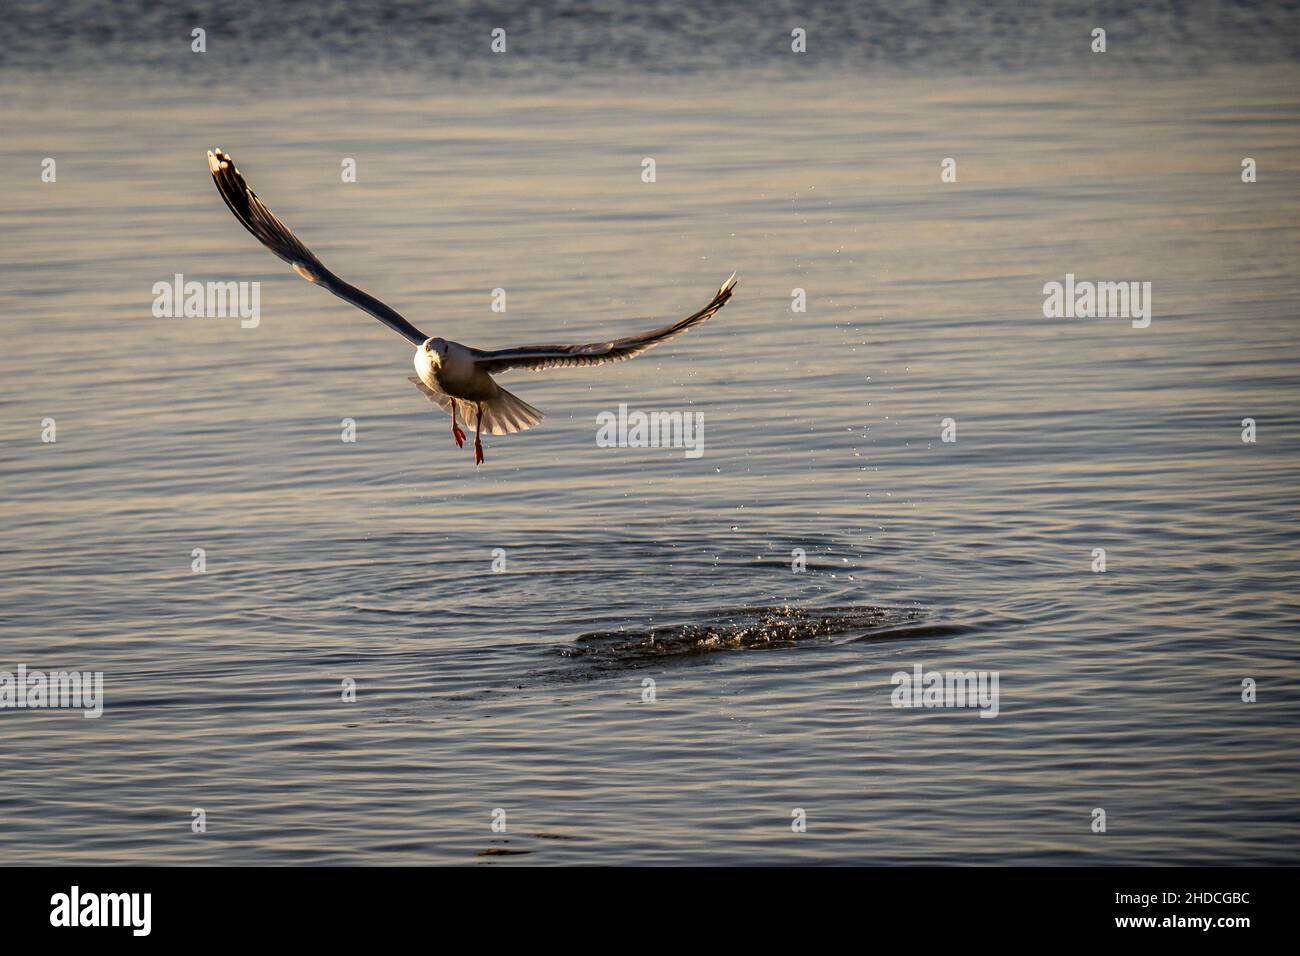 Bellissimo uccello acquatico che vola sull'acqua Foto Stock